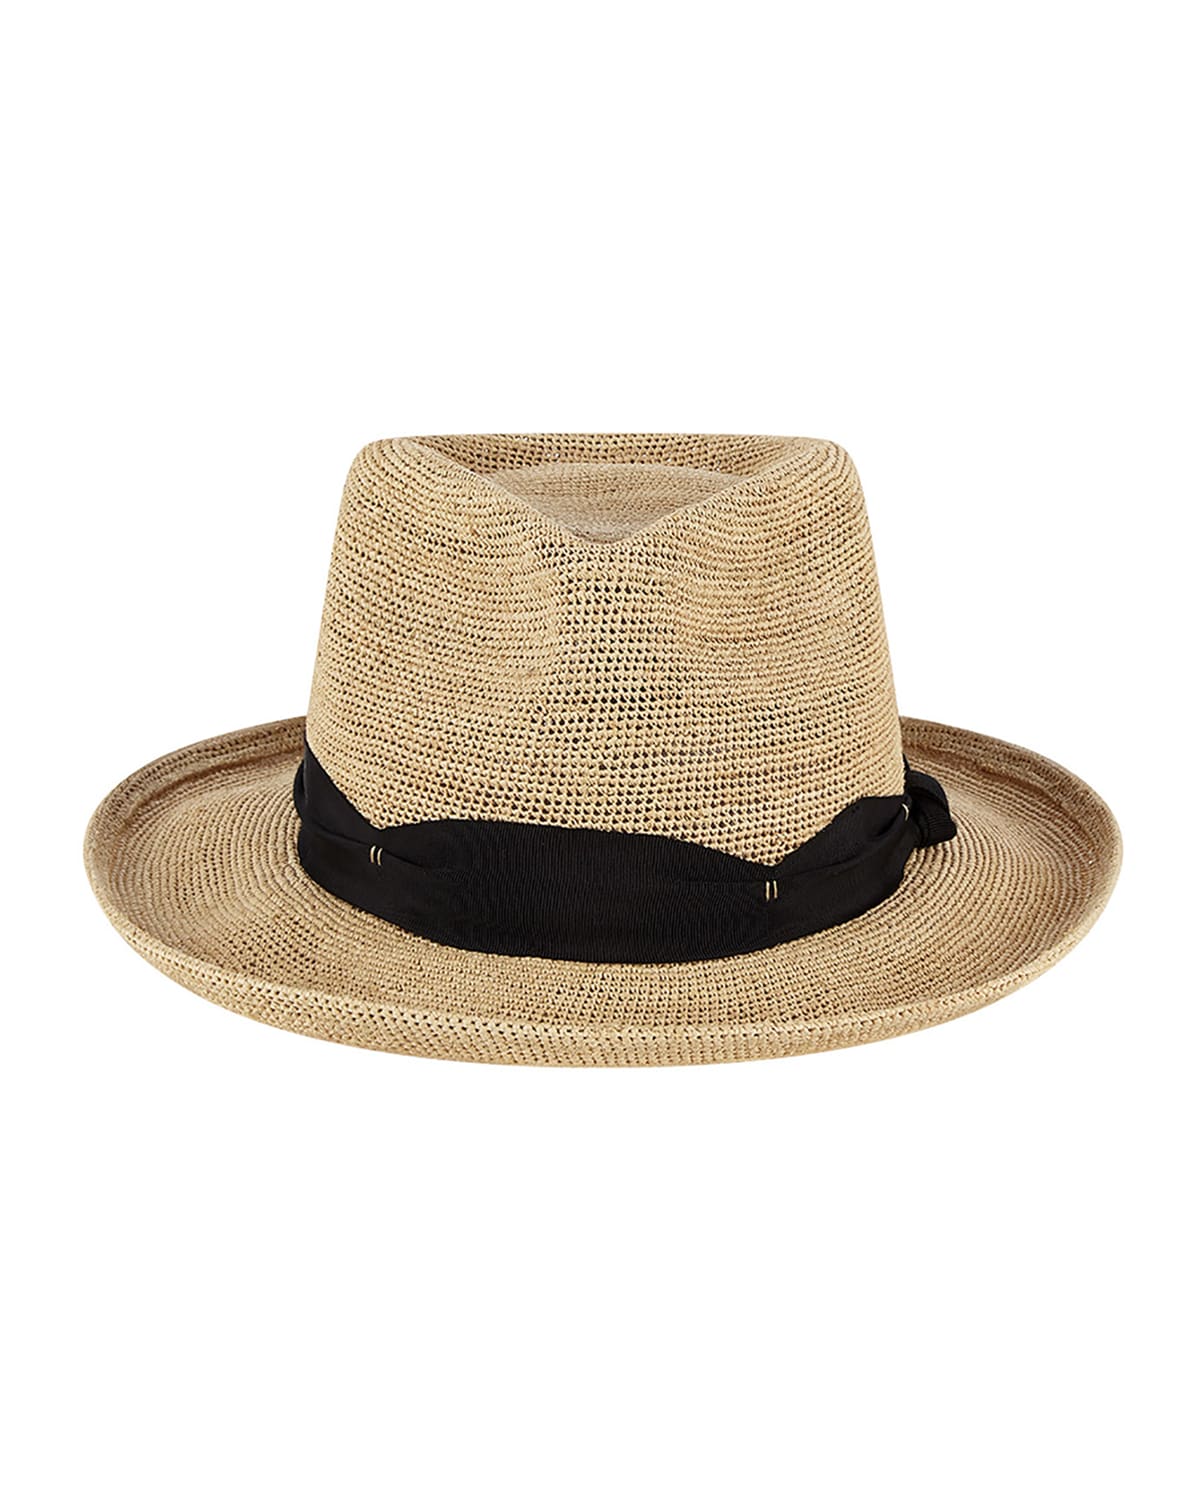 Keith James Men's King Fedora Hat | Neiman Marcus